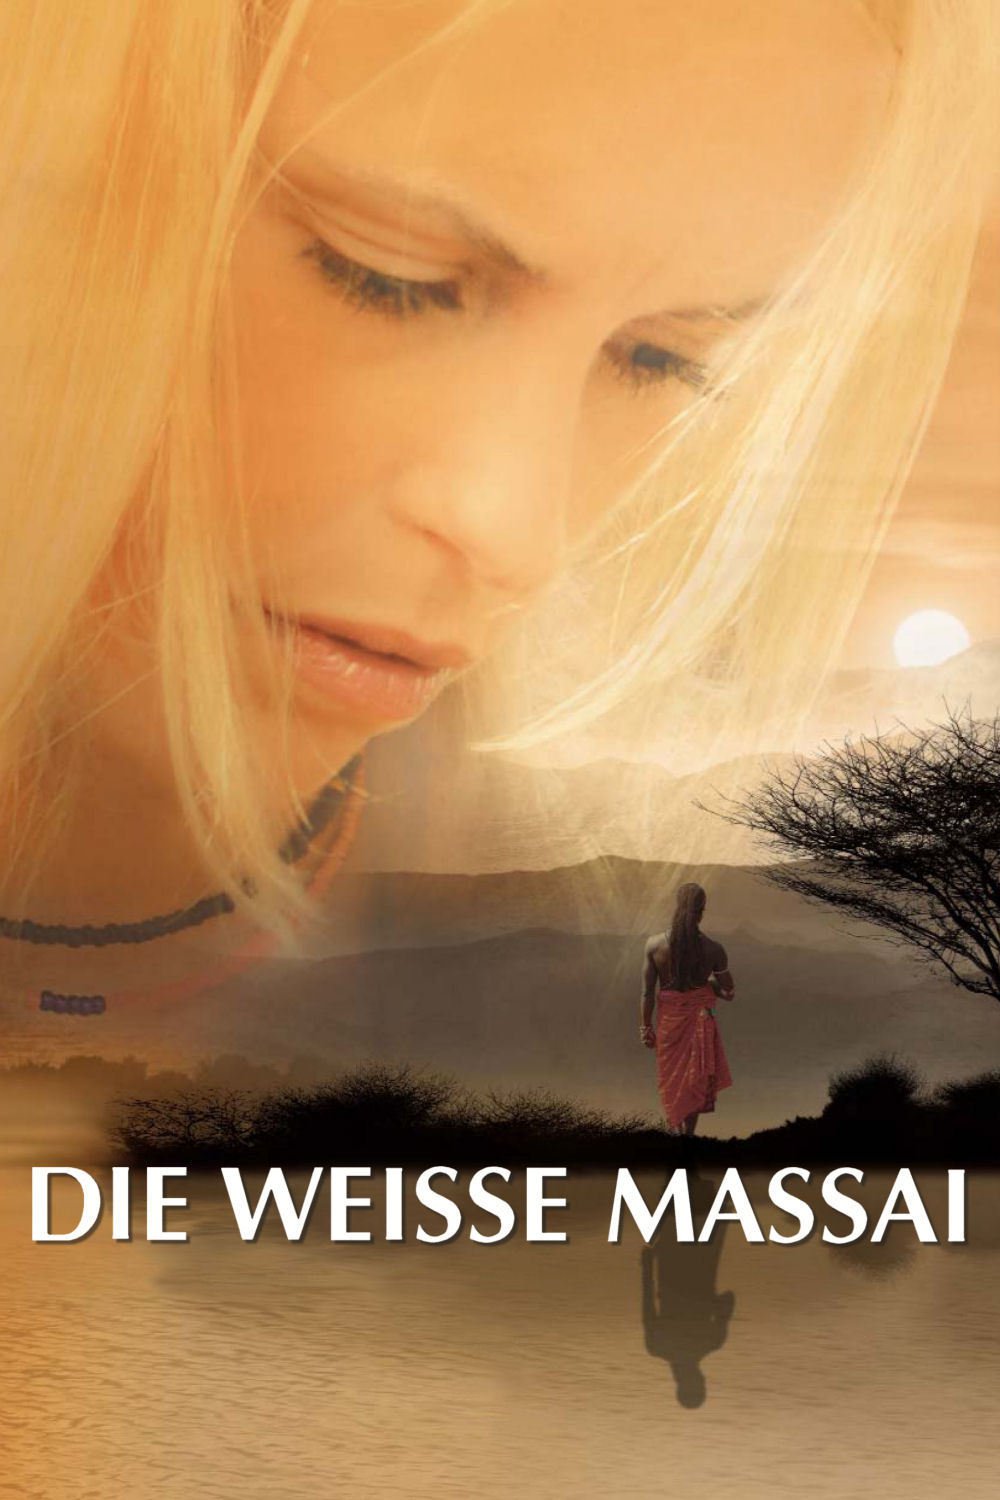 Plakat von "Die weisse Massai"